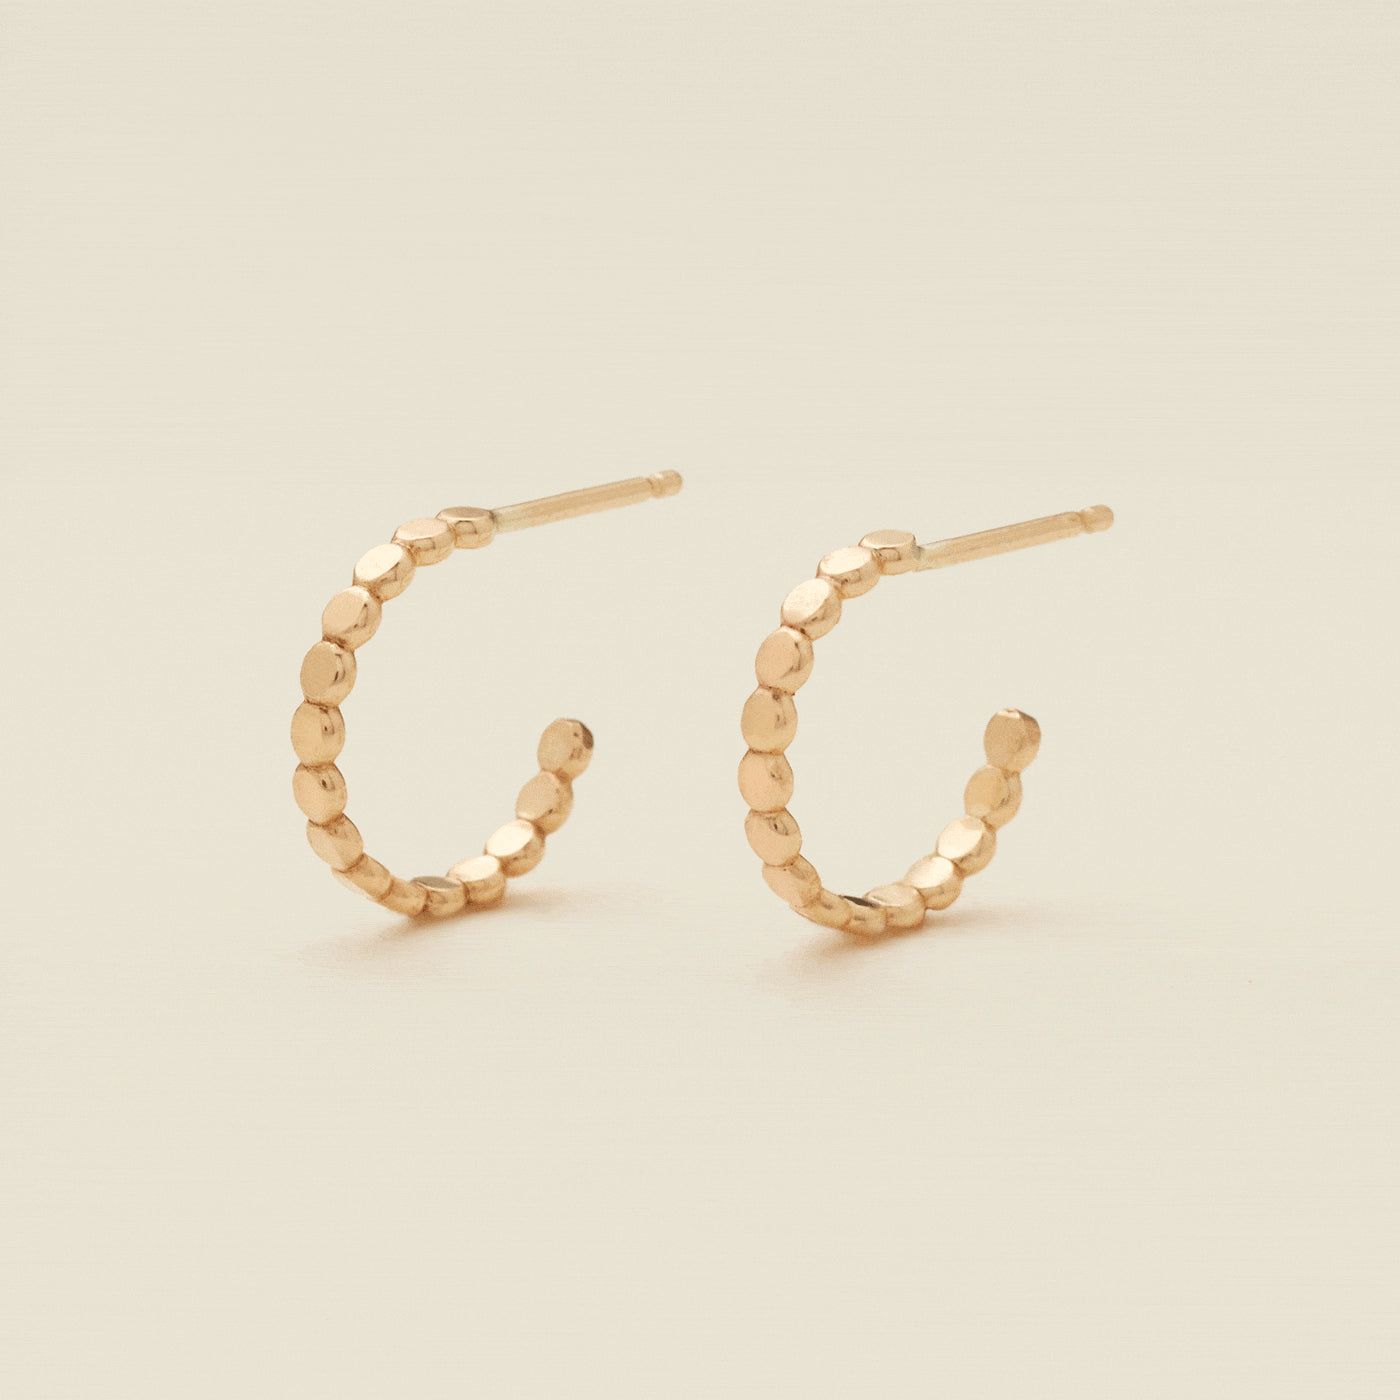 Poppy Hoop Earrings Gold Filled / 15mm Earring